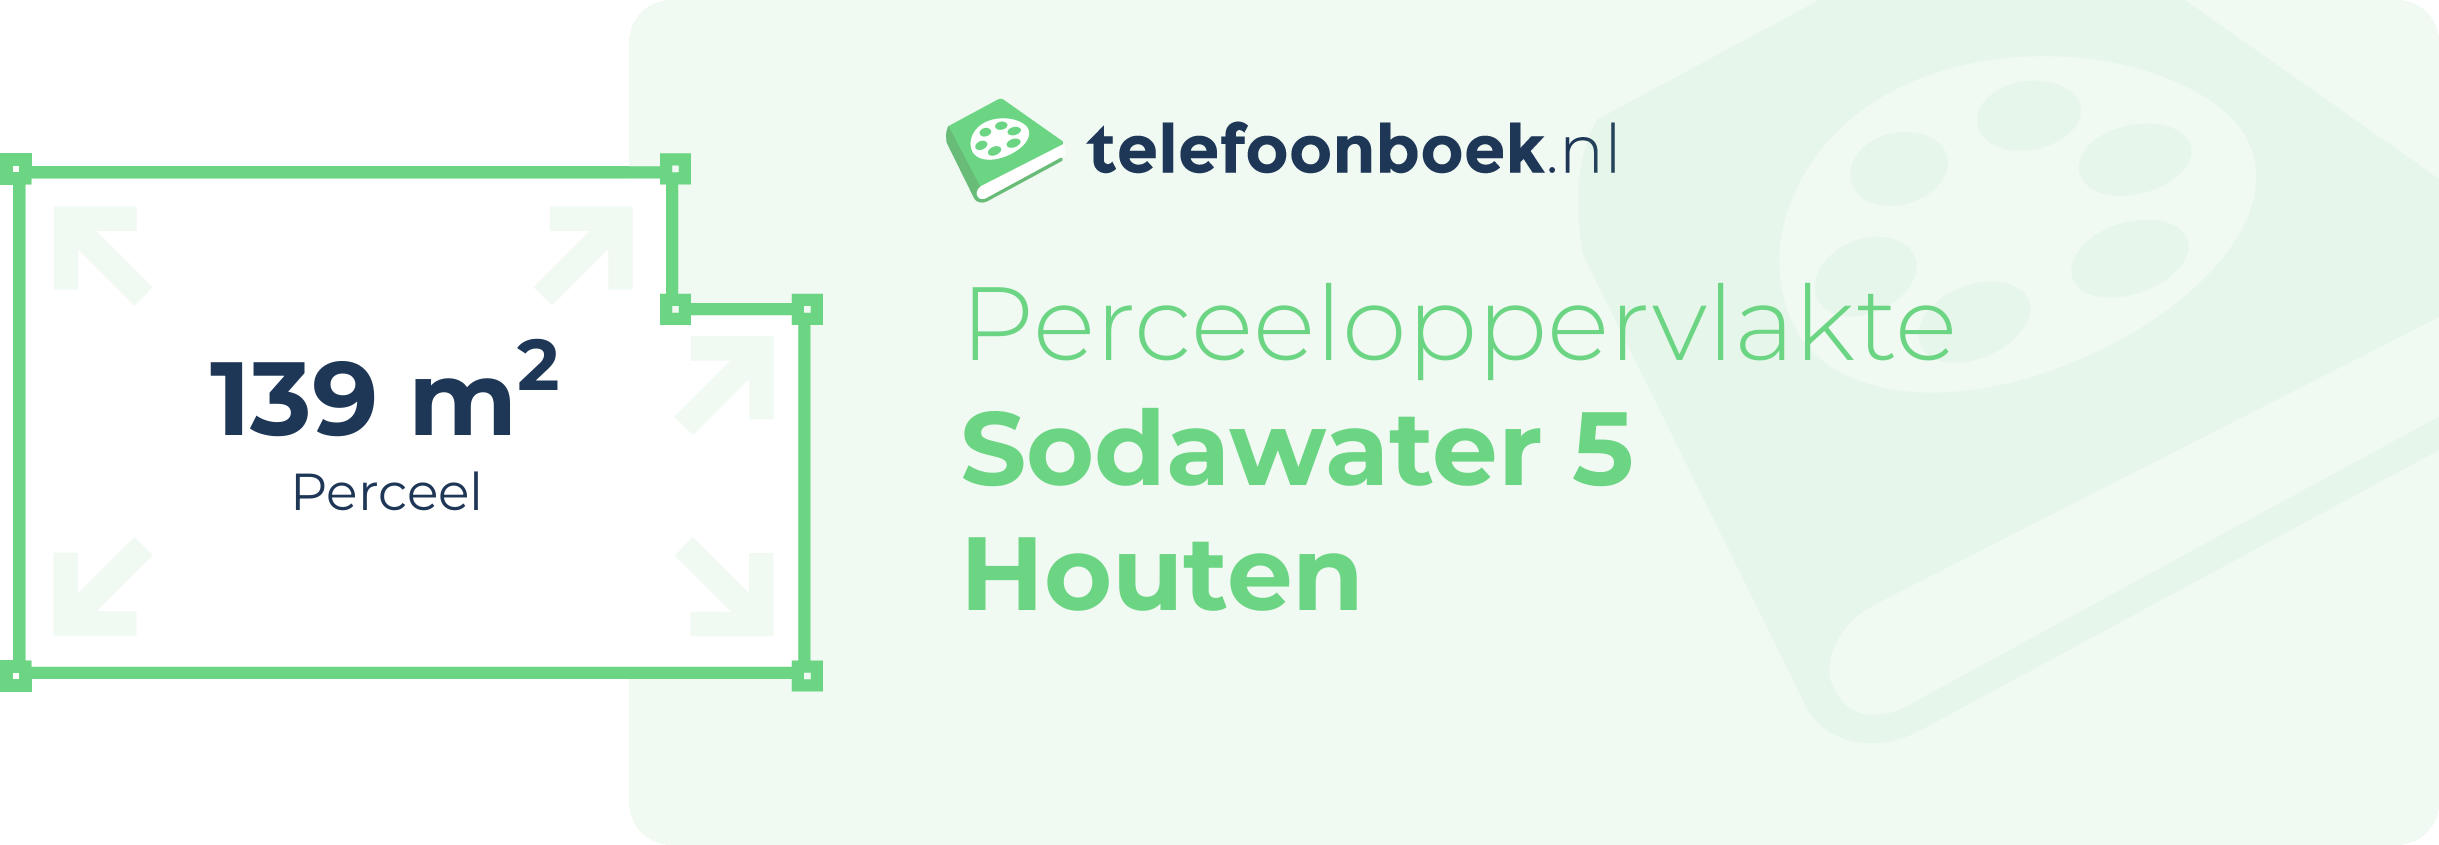 Perceeloppervlakte Sodawater 5 Houten